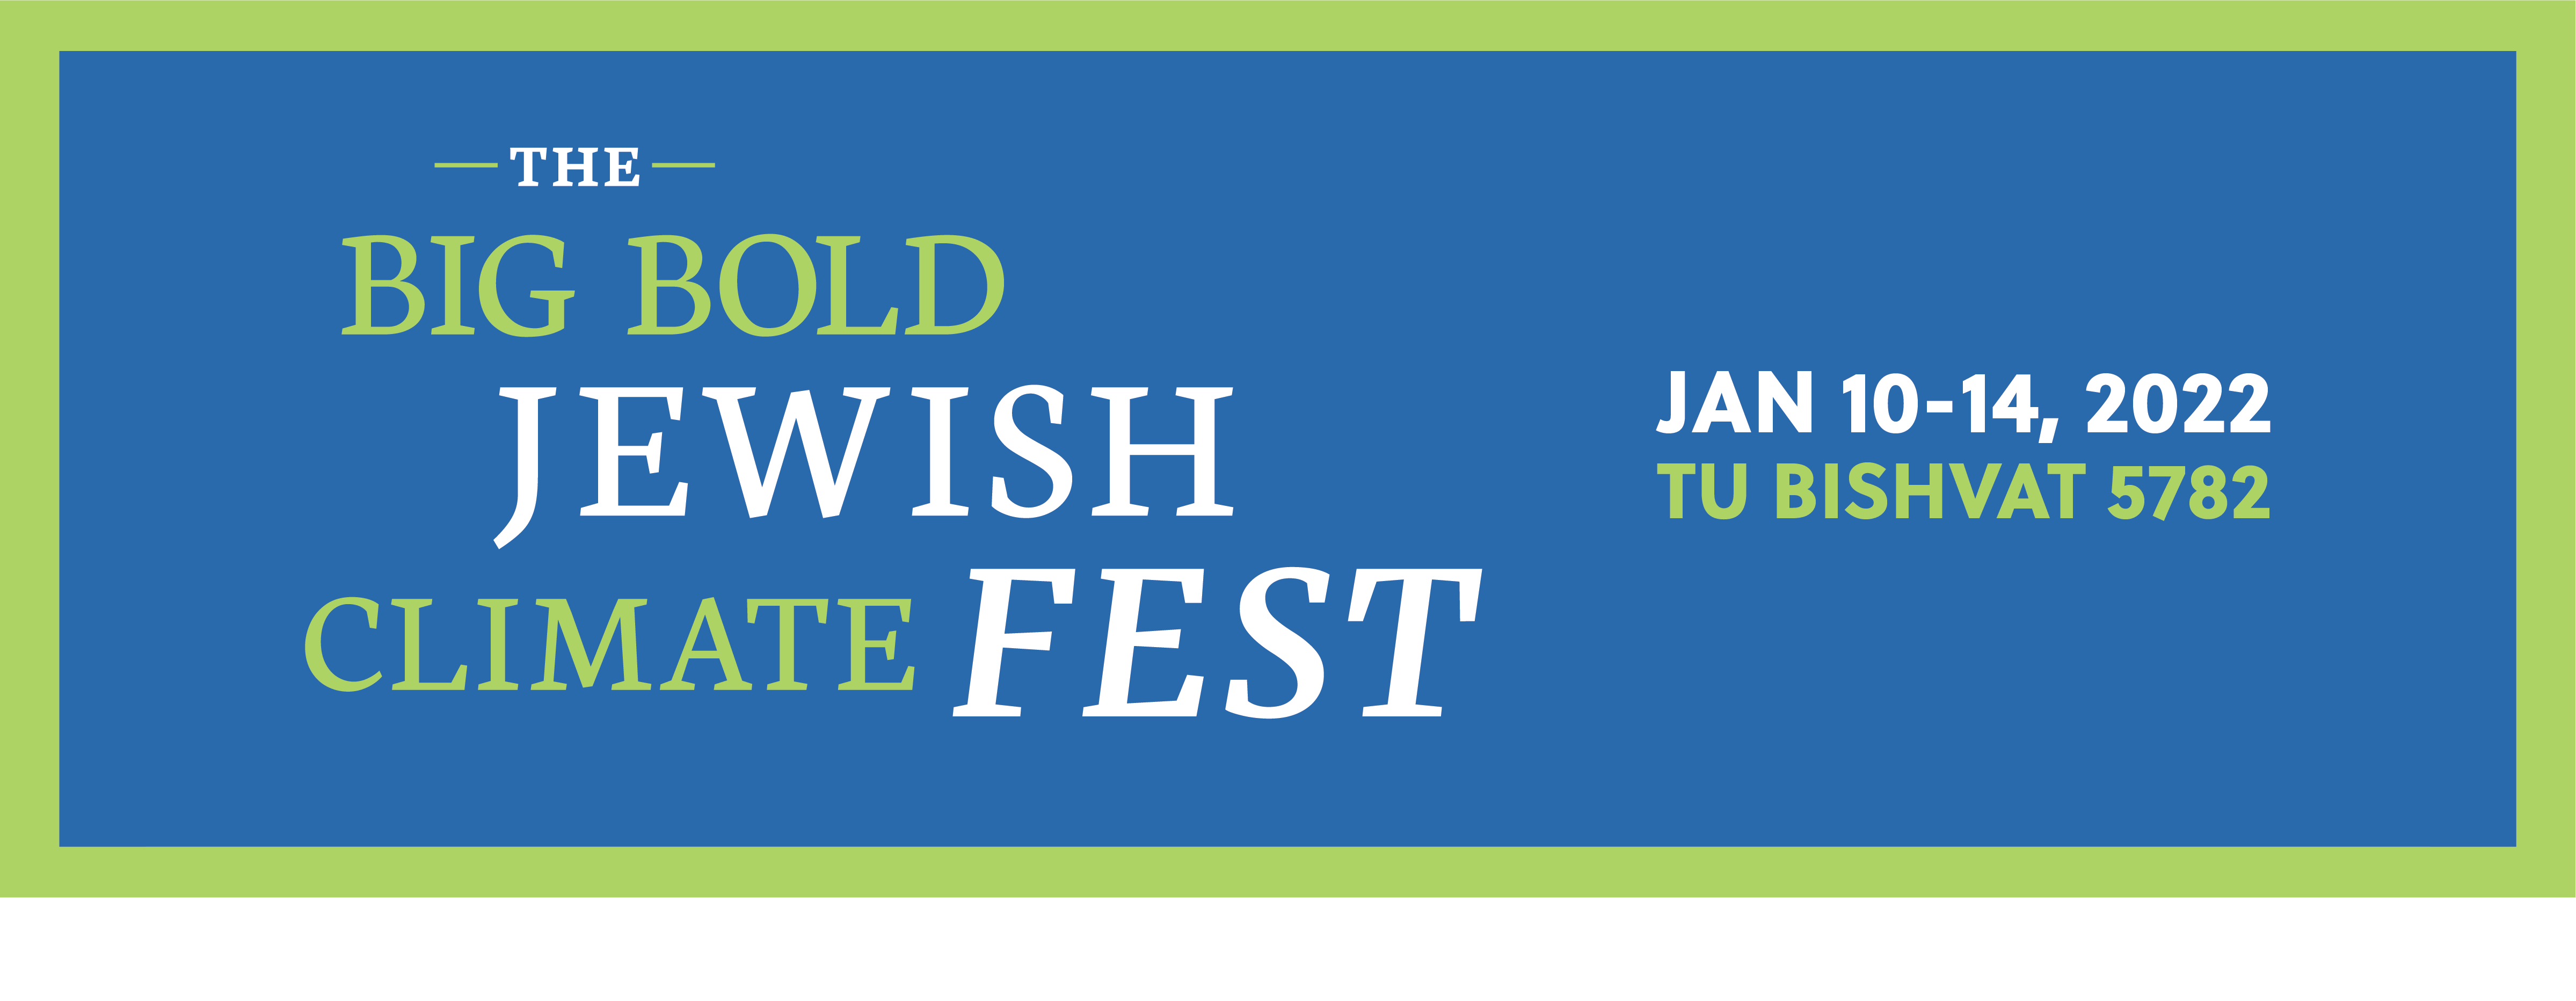 Big Bold Jewish Climate Fest, Jan 10-14